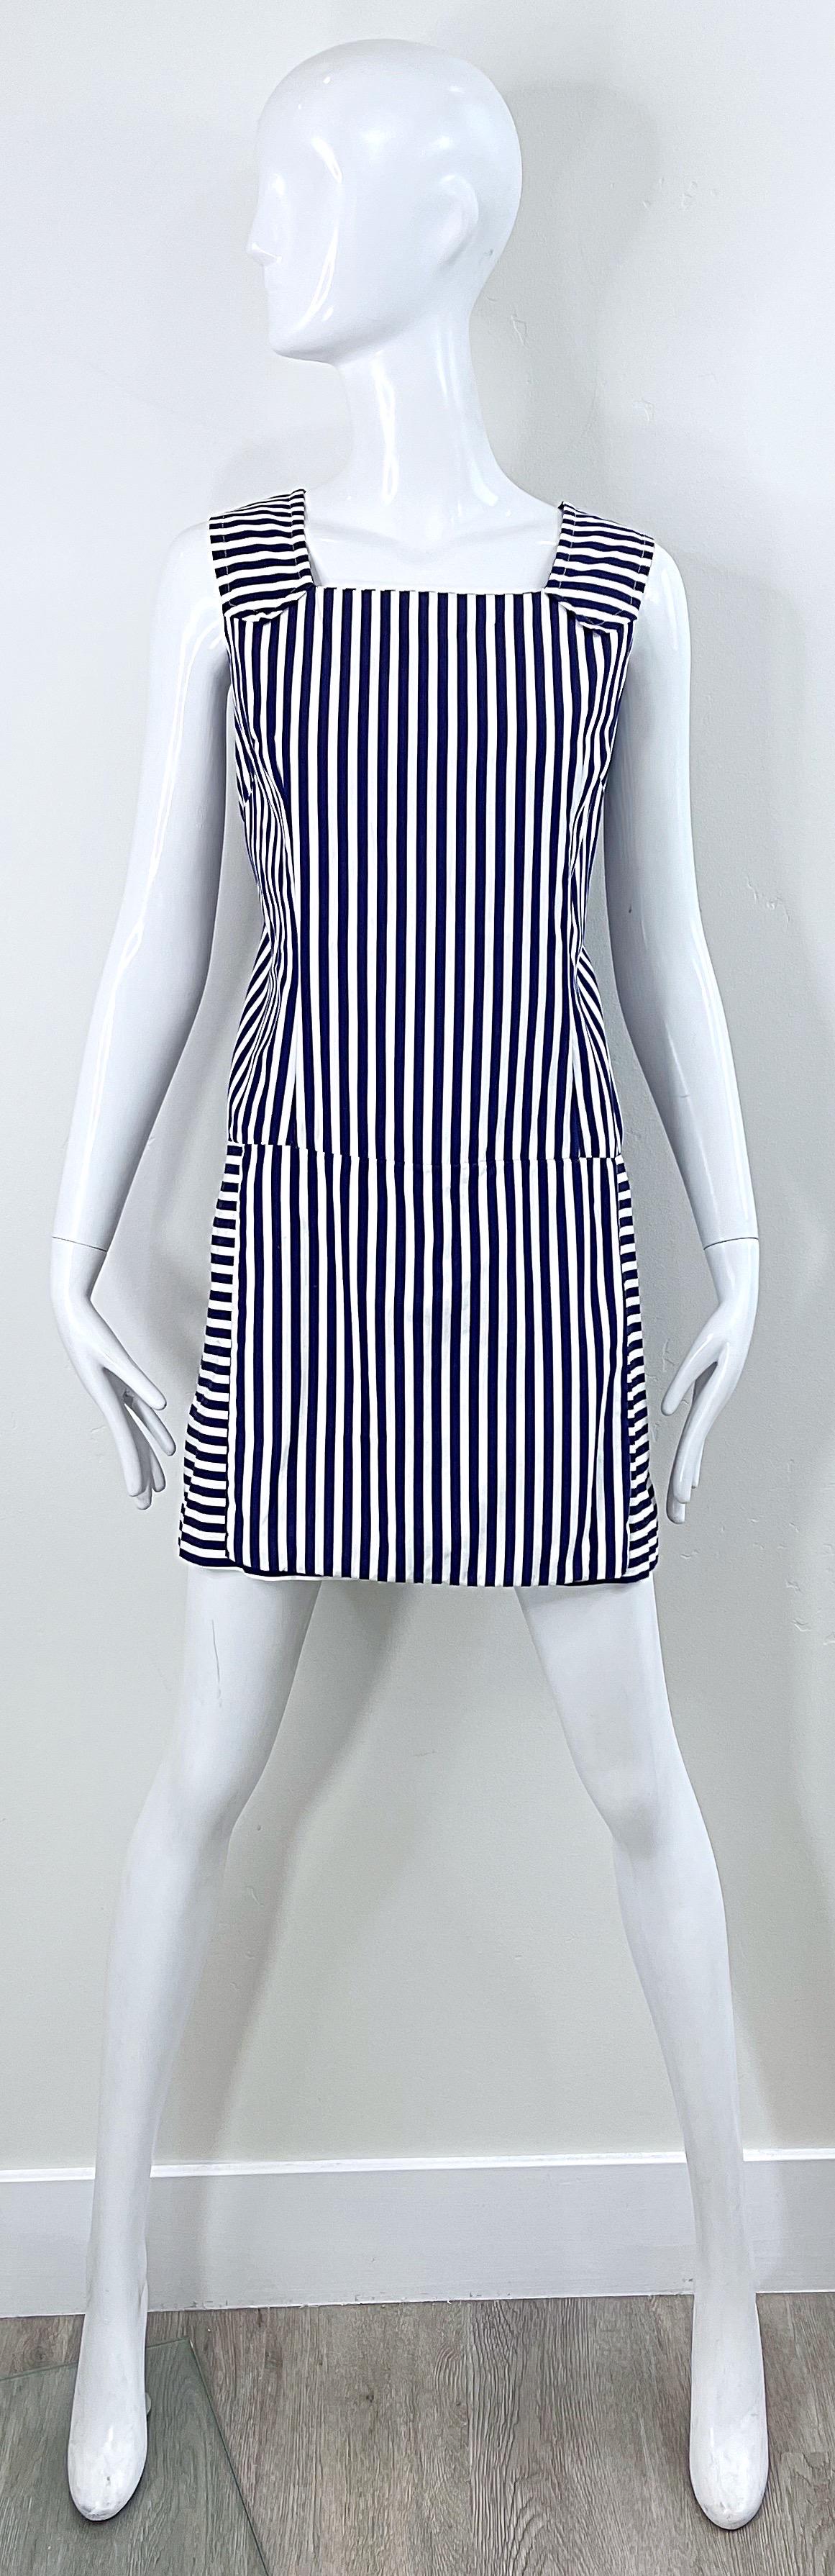 Barboteuse stylisée des années 1960, grande taille, à rayures bleu marine et blanches, avec jupe par-dessus ! Il présente des rayures verticales flatteuses sur le devant et dans le dos. Rayures horizontales contrastées sur les manches. Fermeture à